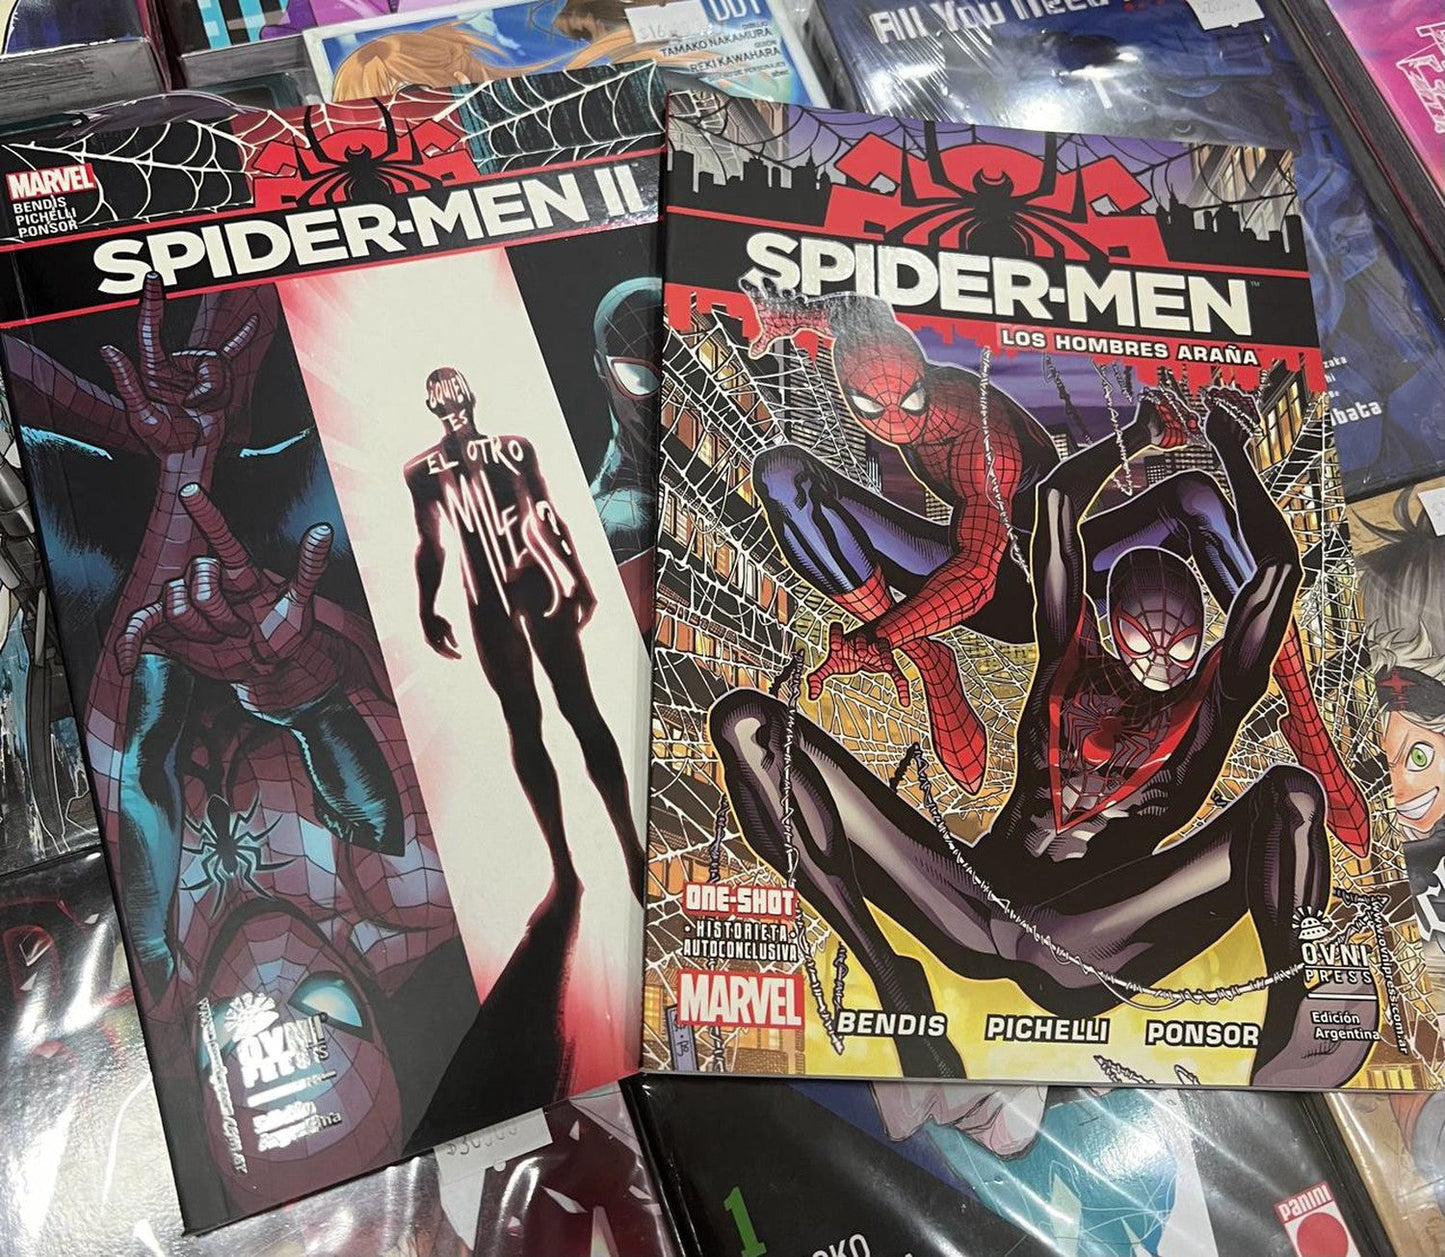 Spider-Men: Los Hombres Araña Completa (2 volúmenes) OVNI Press ENcuadrocomics